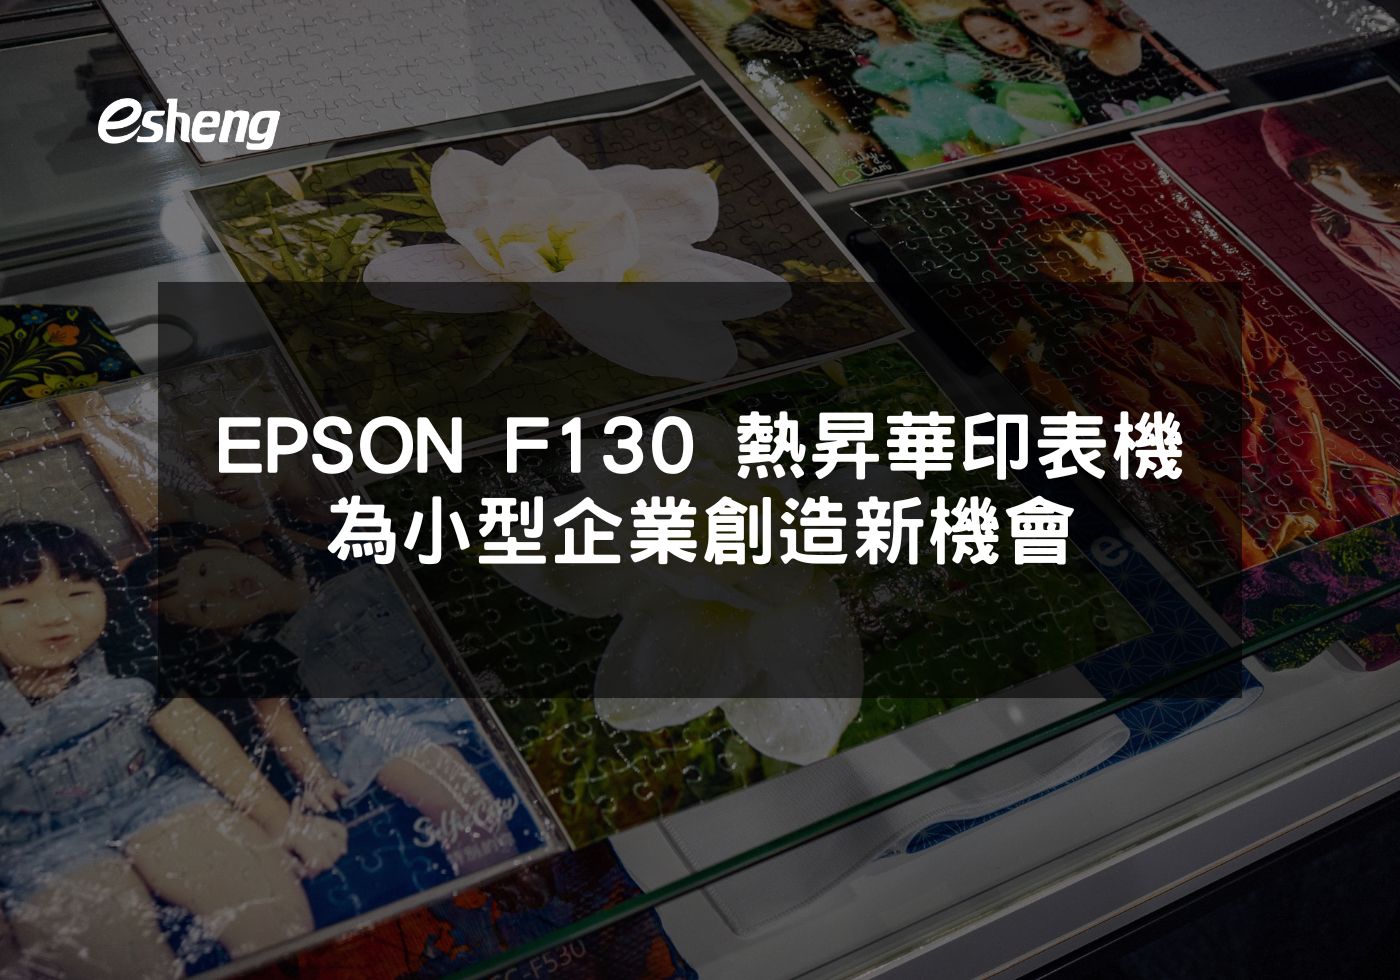 您目前正在查看 EPSON F130 熱昇華印表機 為小型企業創造新機會